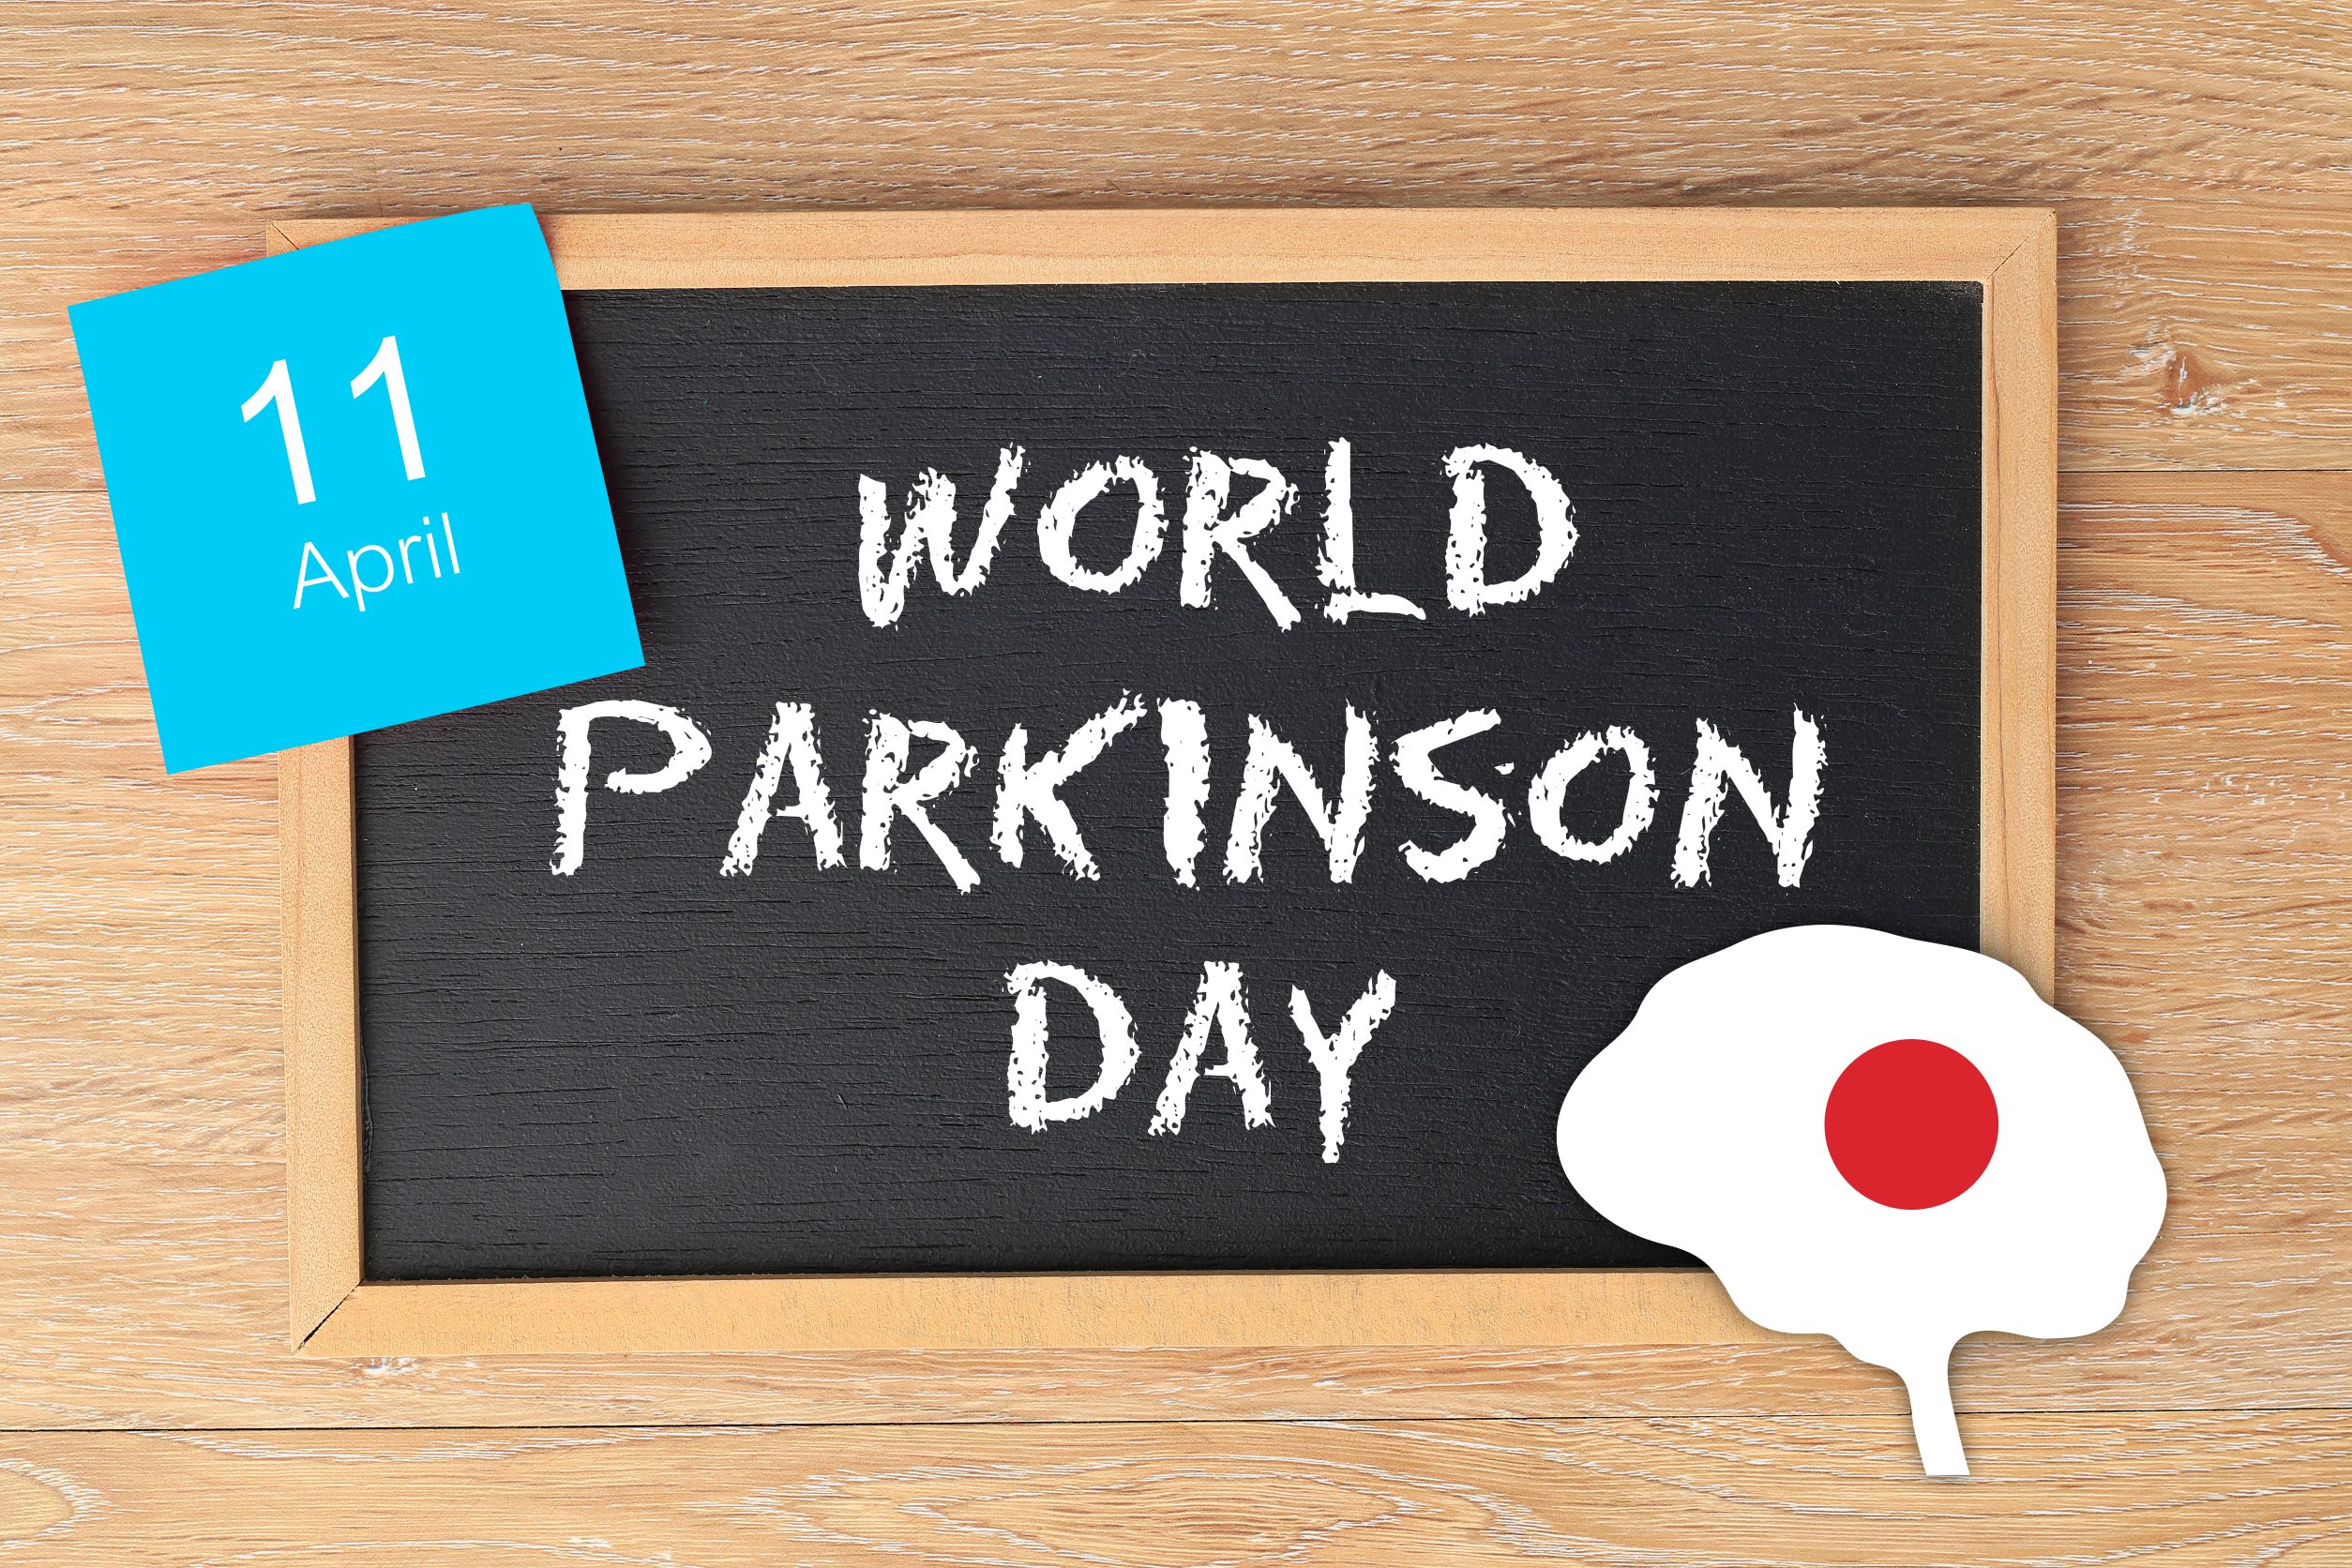 Jährlicher World Parkinson Day am 11. April